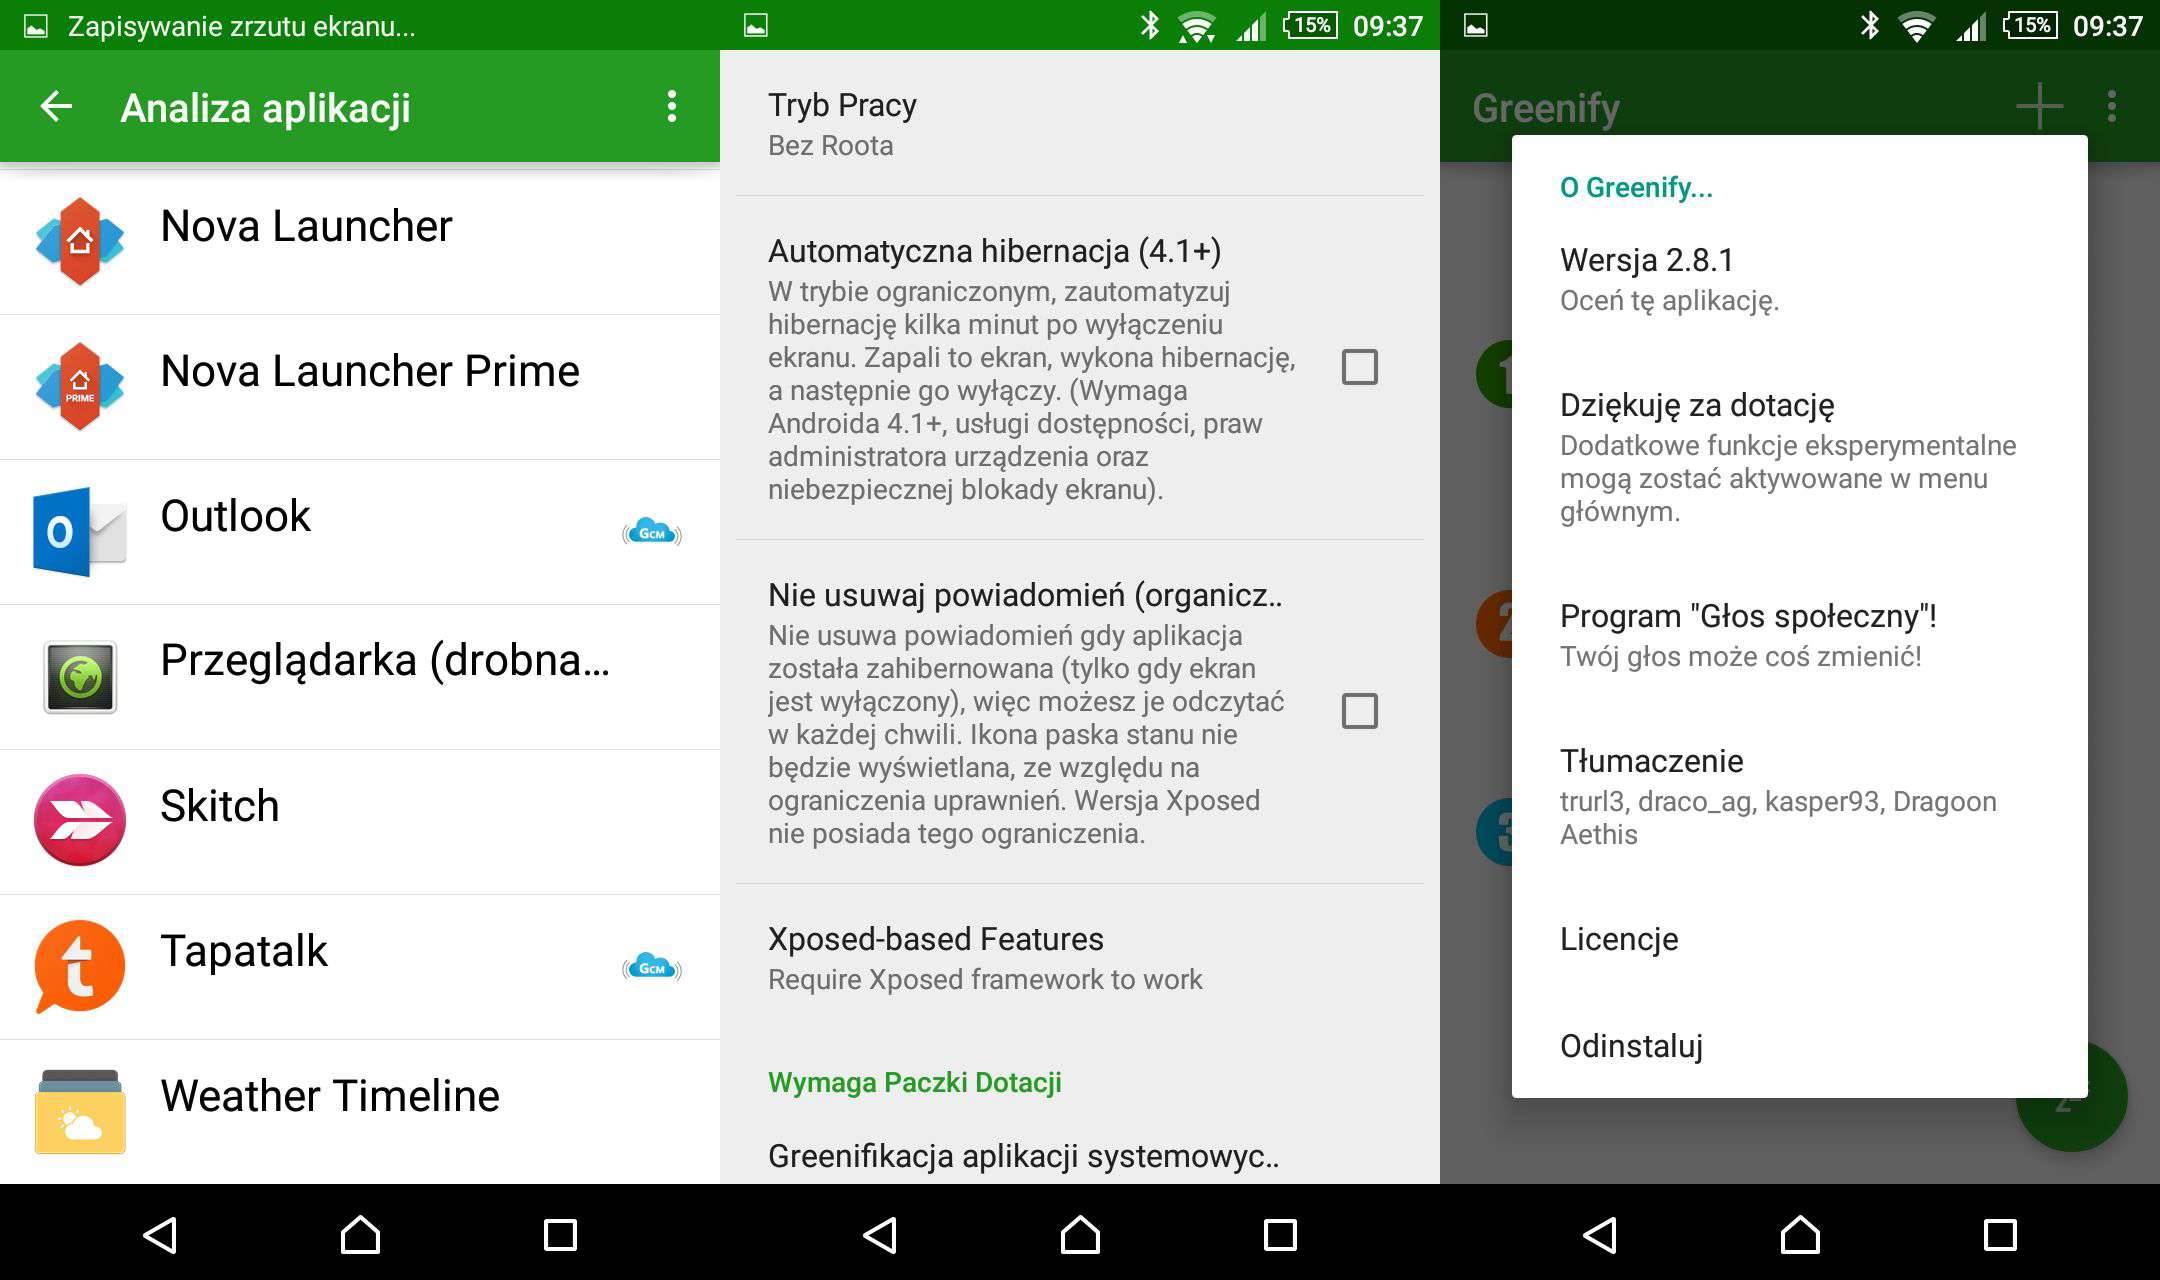 Greenify - recenzja aplikacji gry-i-aplikacje Recenzja, polska recenzja Greenify, Greenify, Android  Podejrzewam, że większości z was bateria w urządzeniu mobilnym rozładowała się szybciej, niż zakładaliście, szczególnie użytkownicy Androida wiedzą, o czym mowa. v0YtIpv